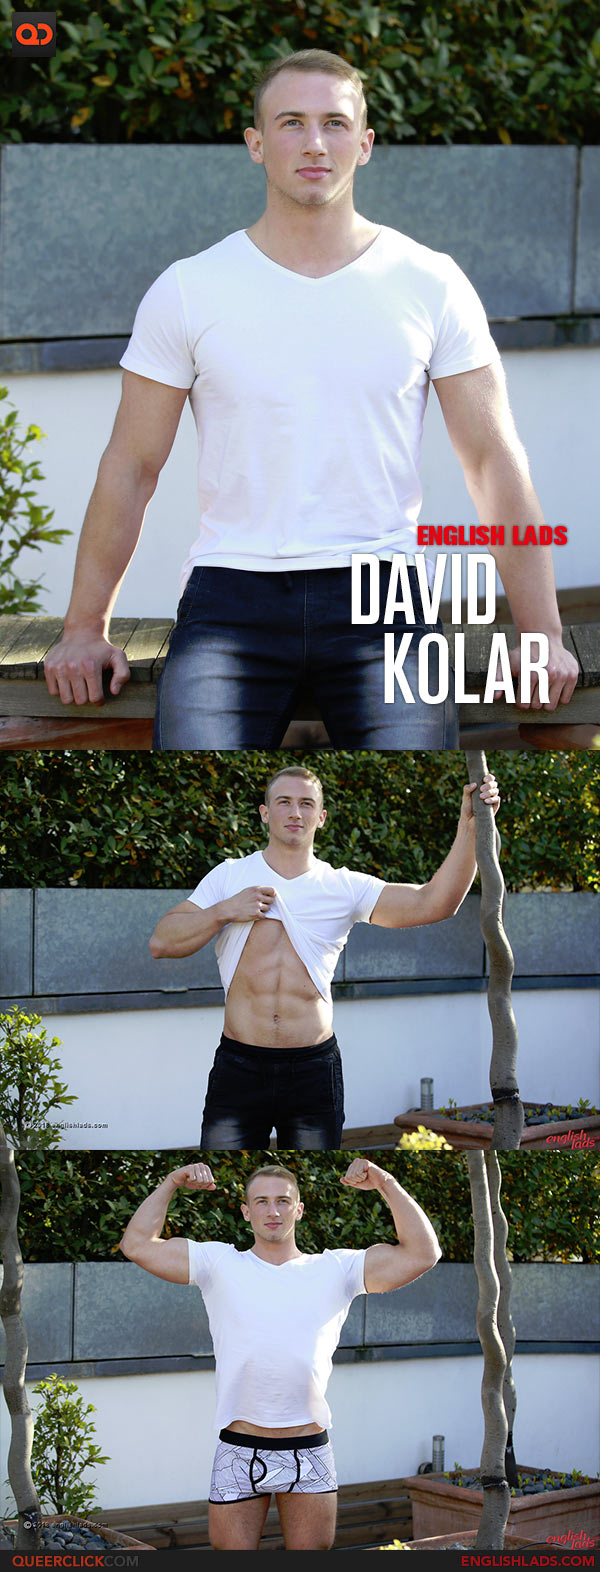 English Lads: David Kolar